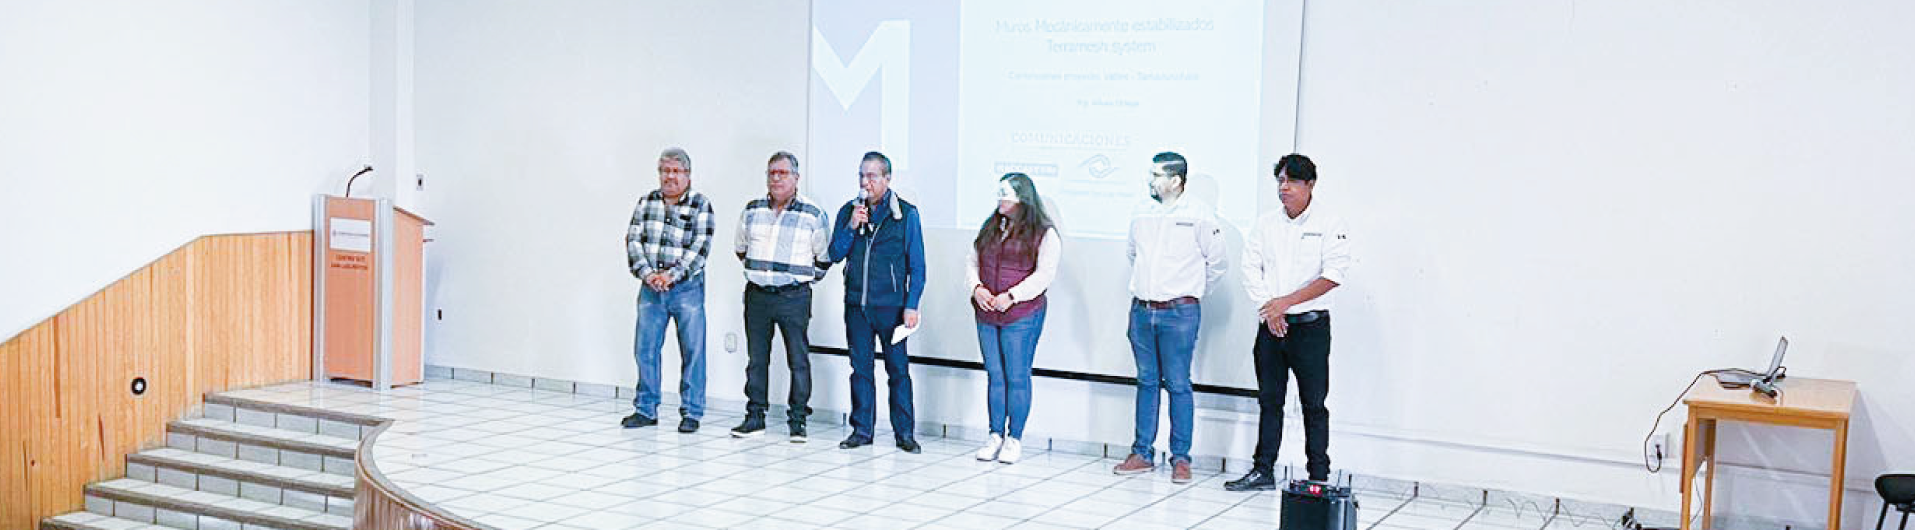 Exitoso Seminario “Soluciones Maccaferri Aplicadas en el Sector de Transportes” en San Luis Potosí 